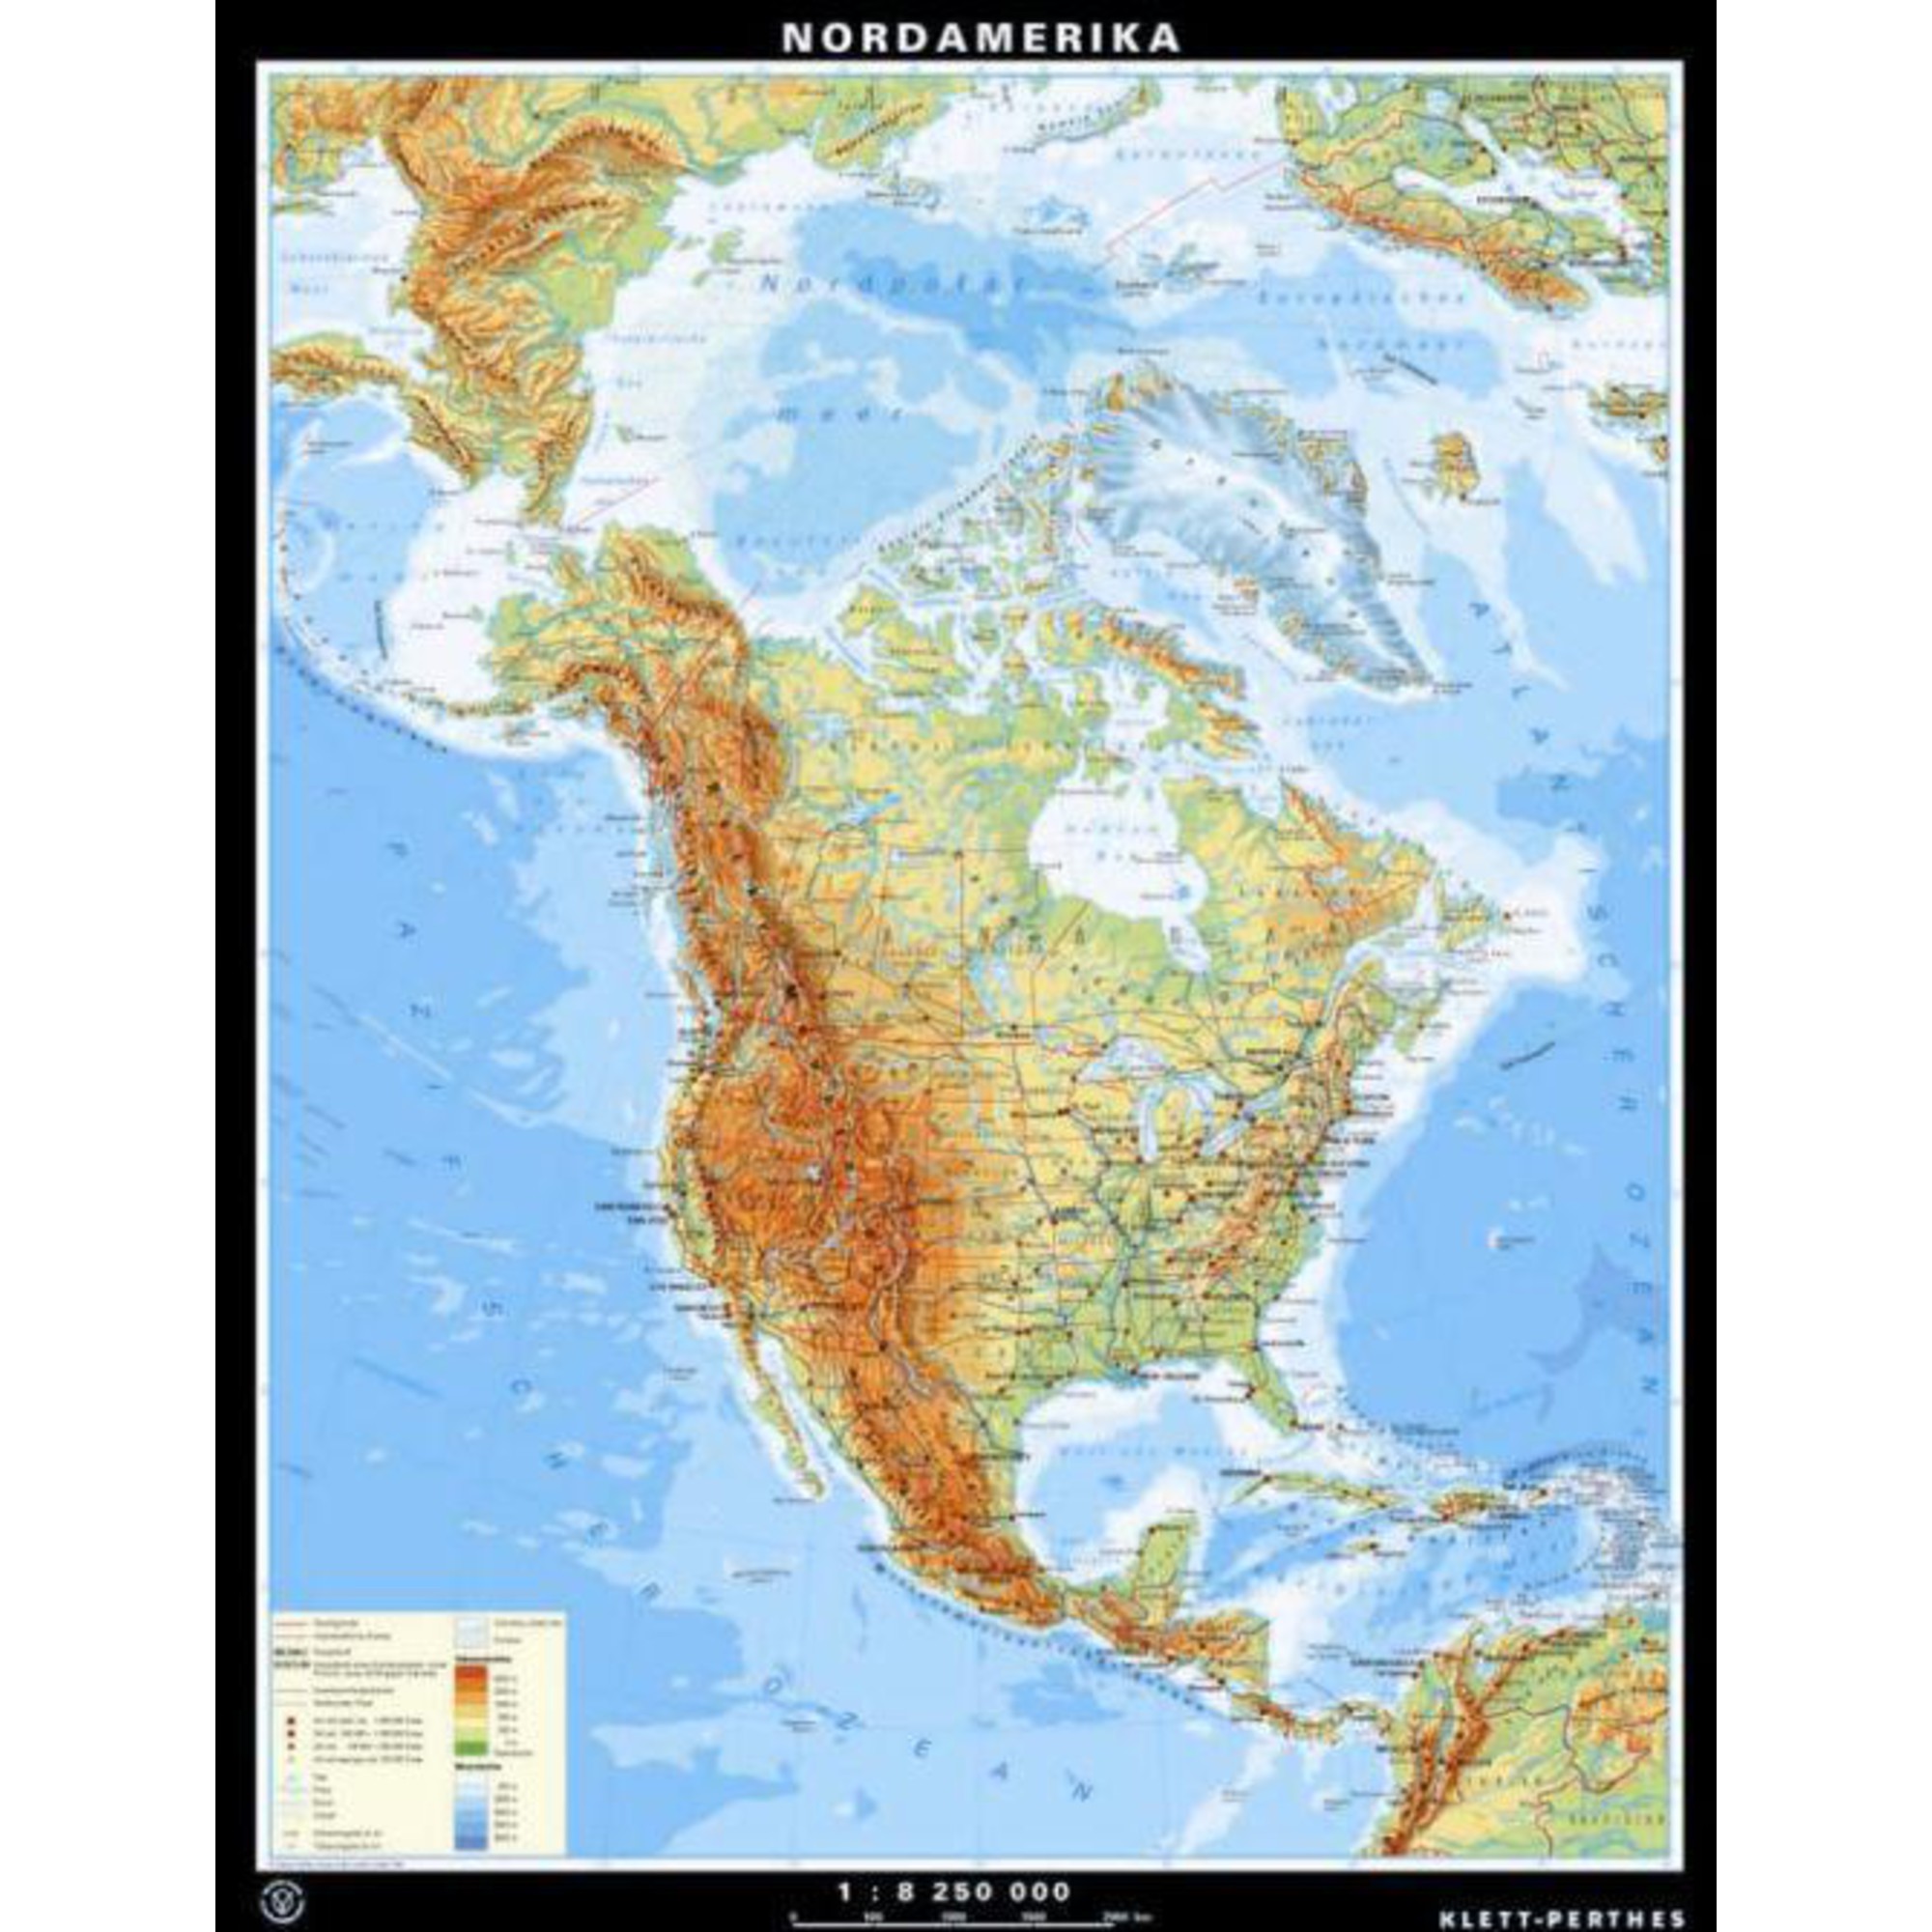 Klett Perthes Verlag Harta Continent America De Nord Fizică Politică P Faţă Verso 5599